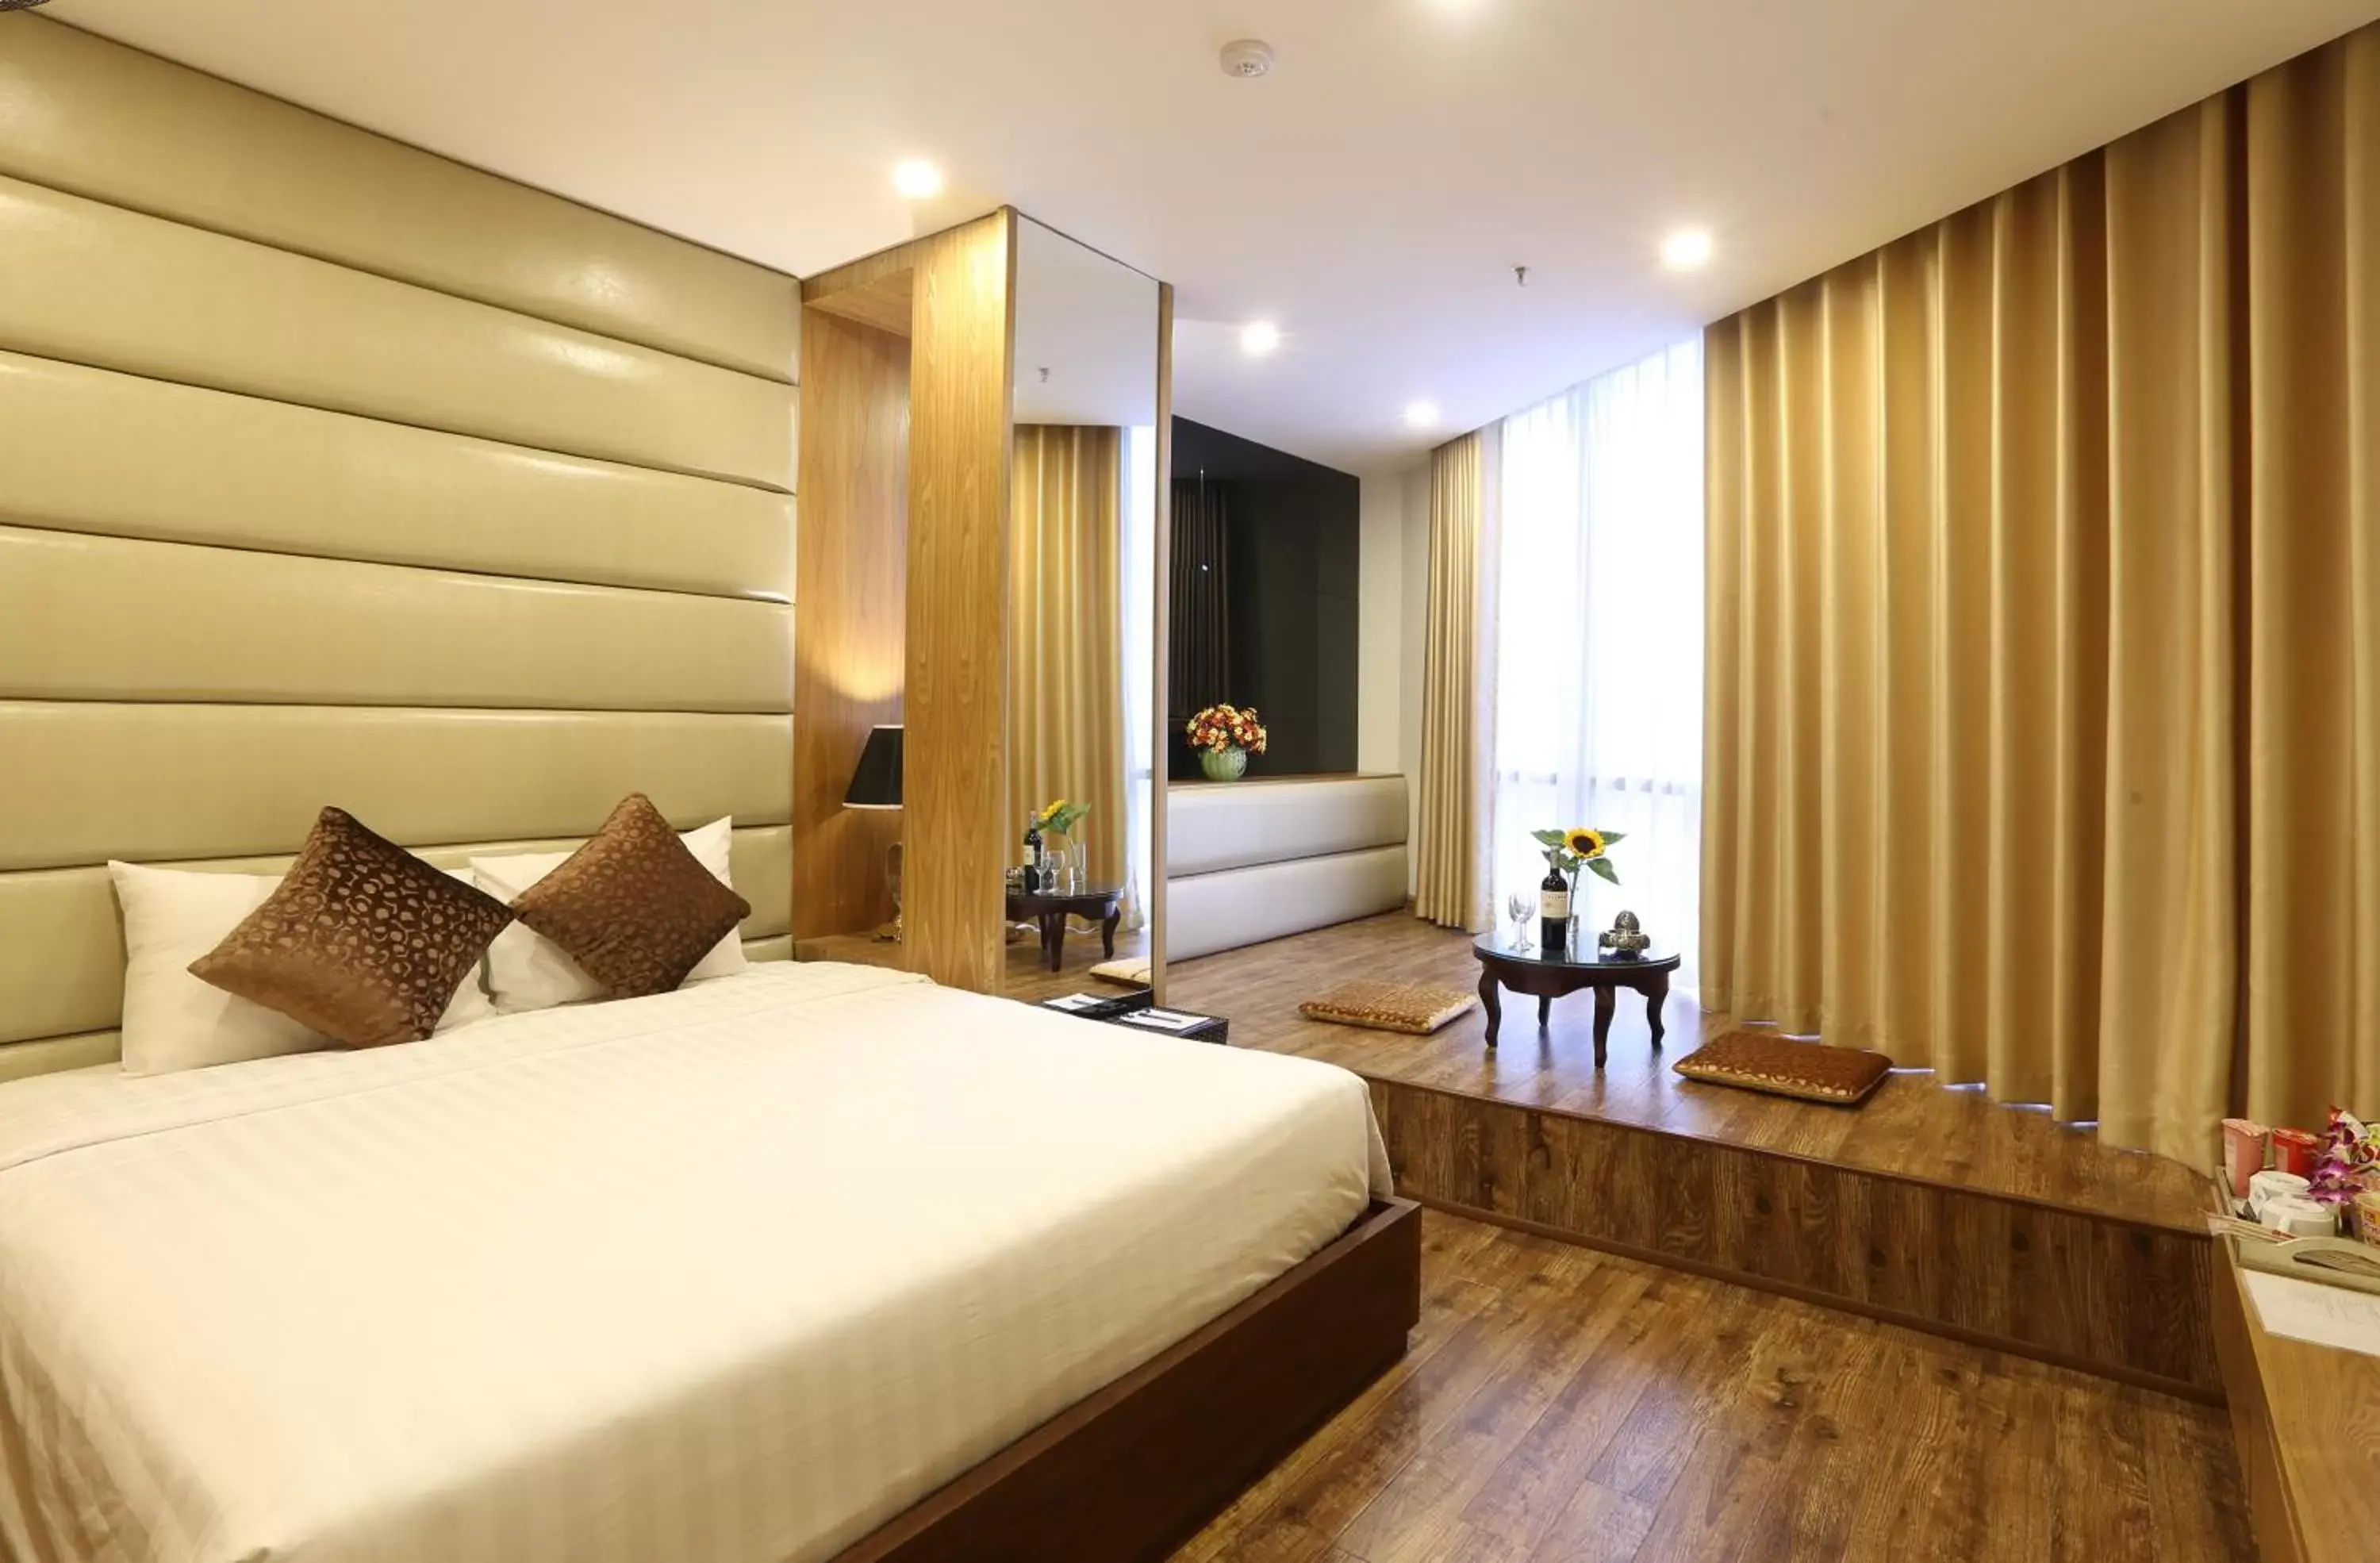 Bedroom, Room Photo in Au Viet Hotel